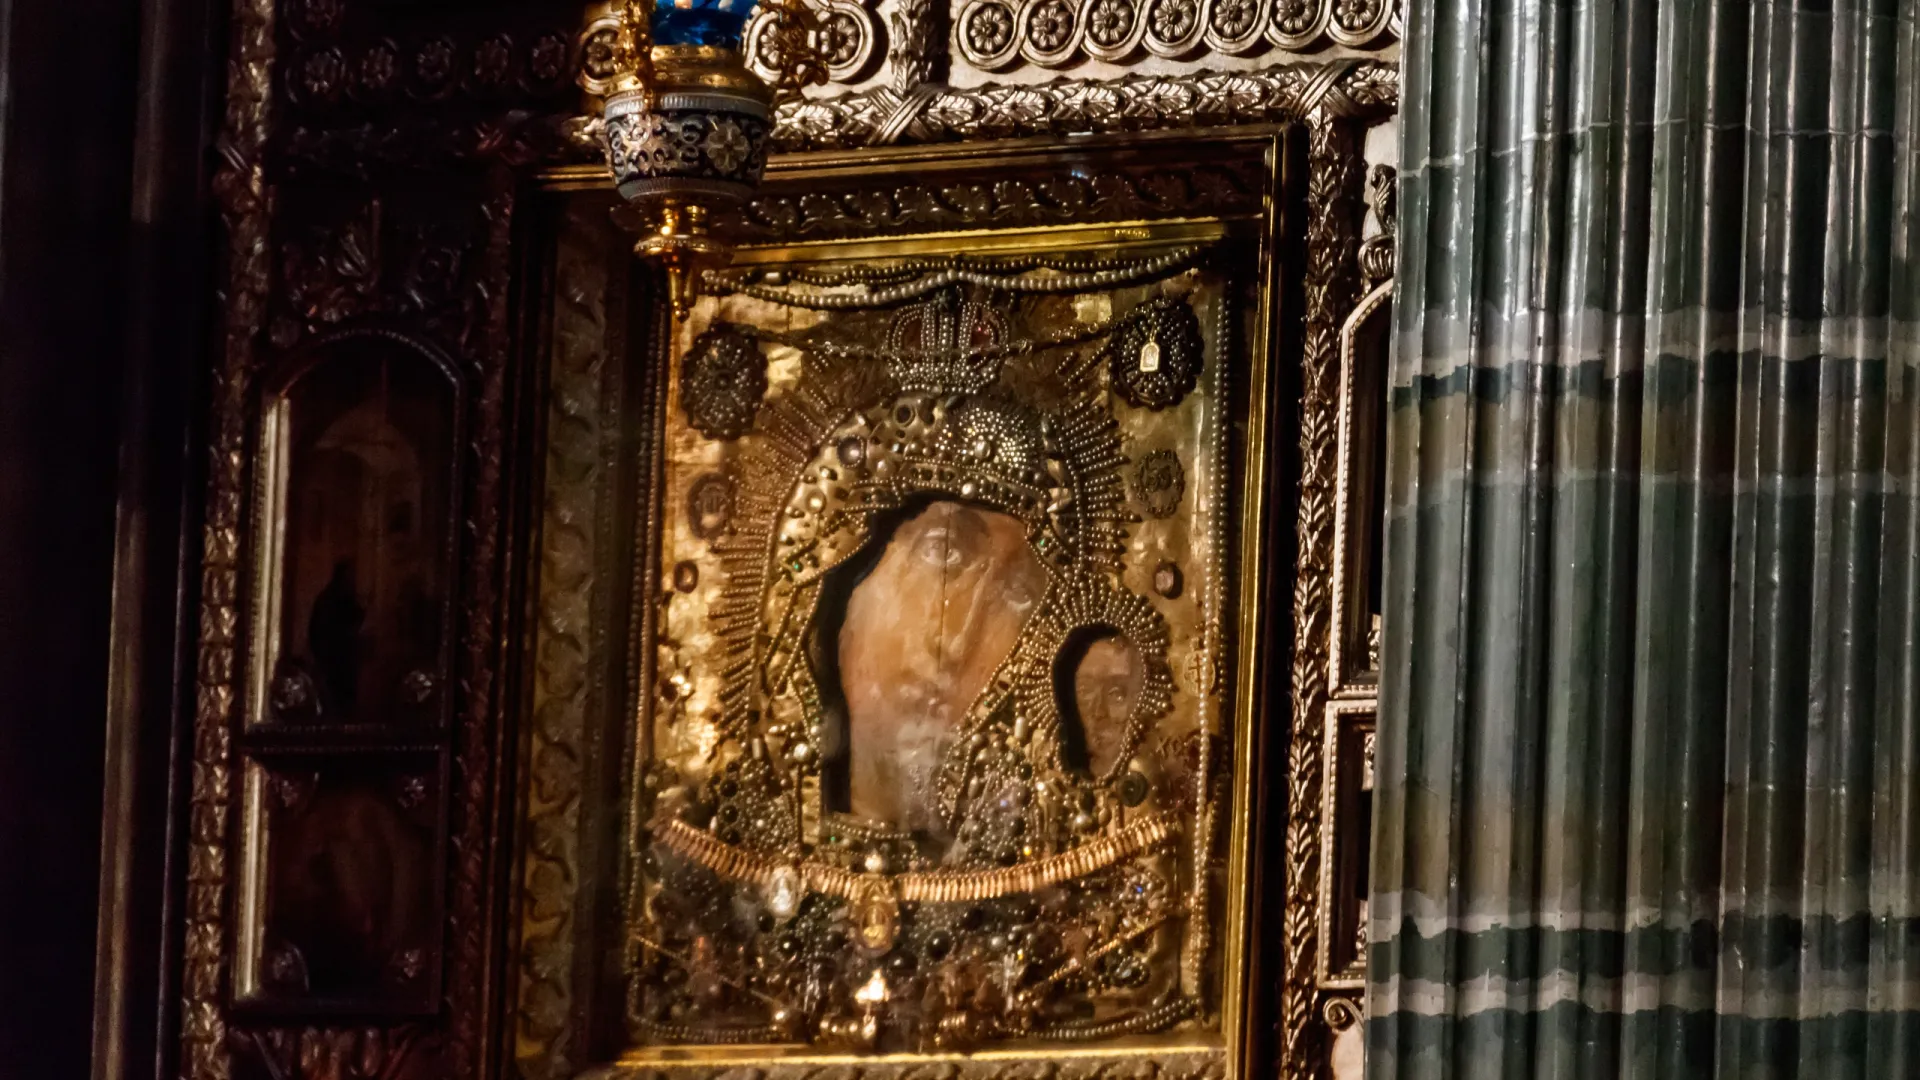 Знаменитая икона Казанской Божьей Матери в Казанском соборе в Санкт-Петербурге. Фото: Olha Solodenko / Shutterstock / Fotodom